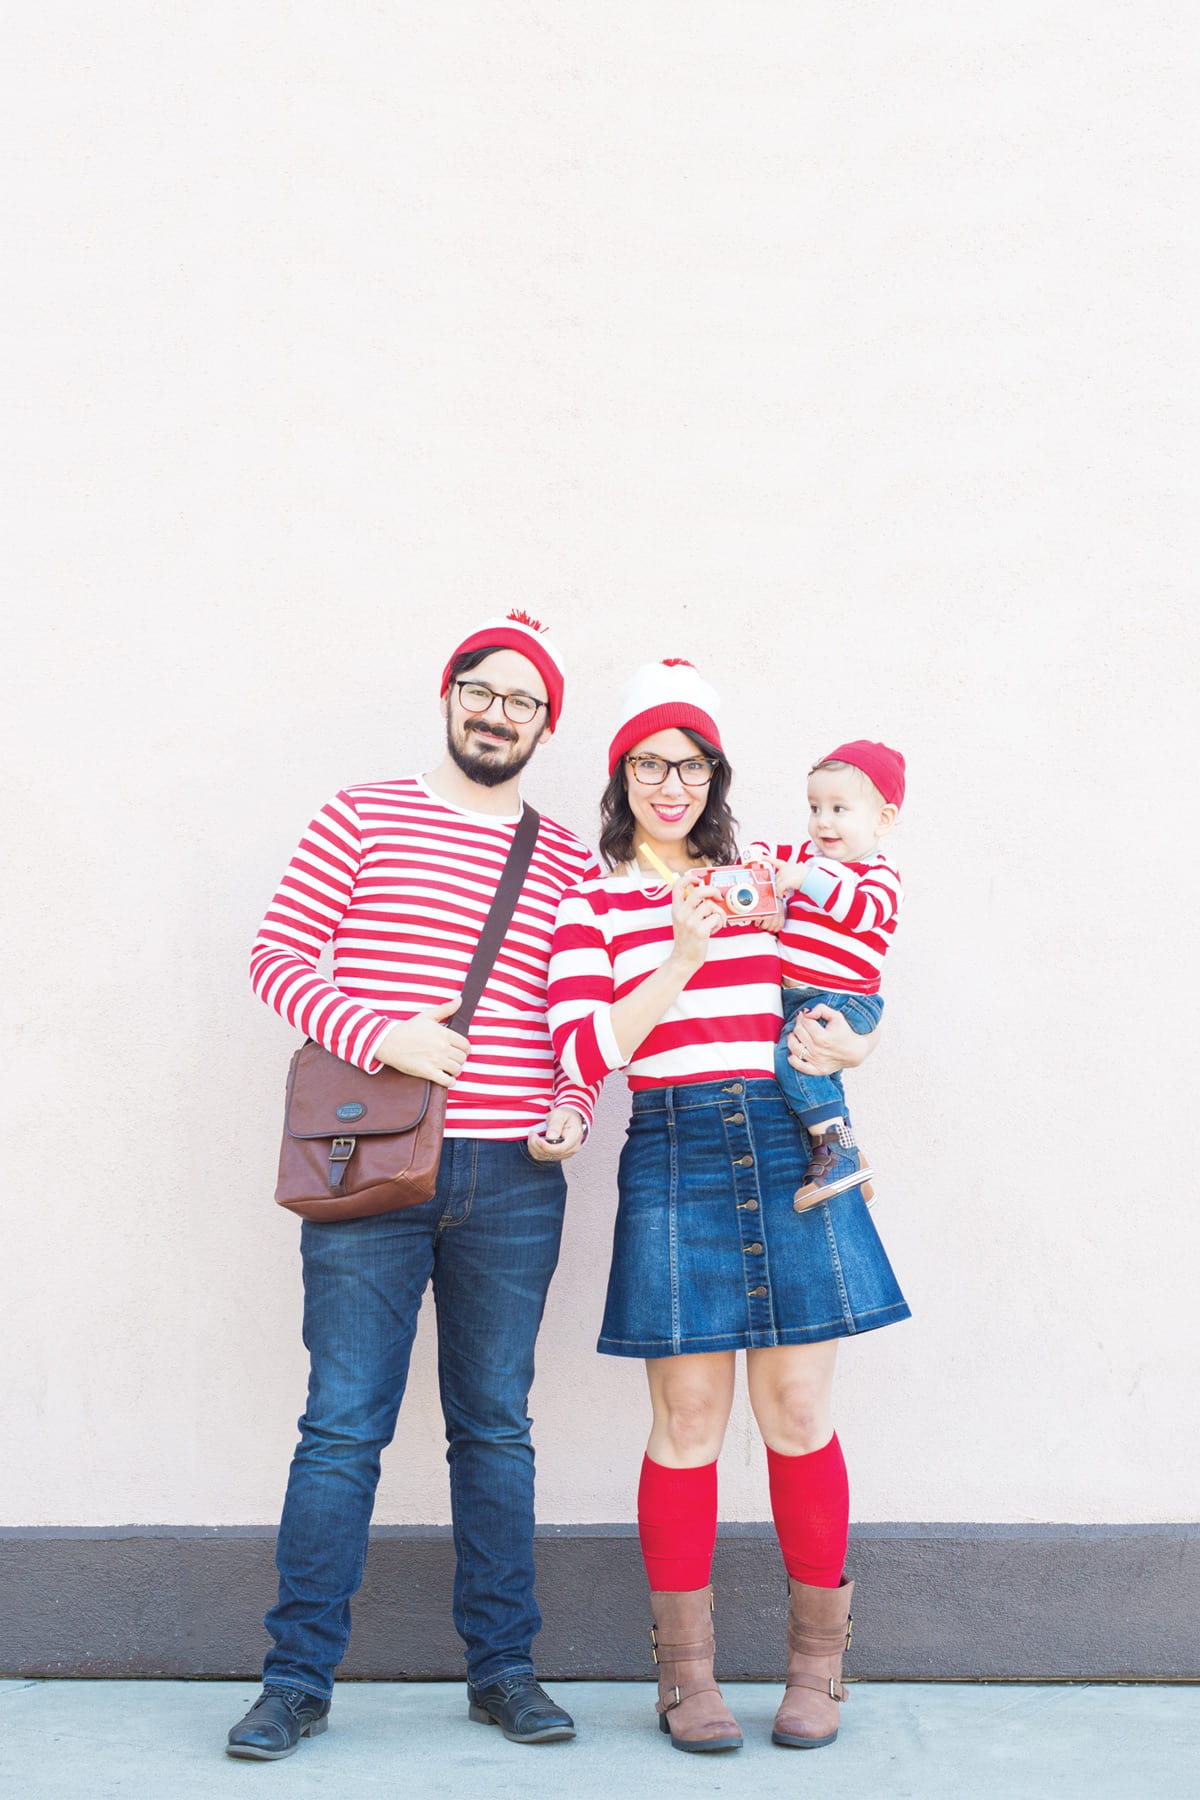 Where's Waldo Costume for a Family